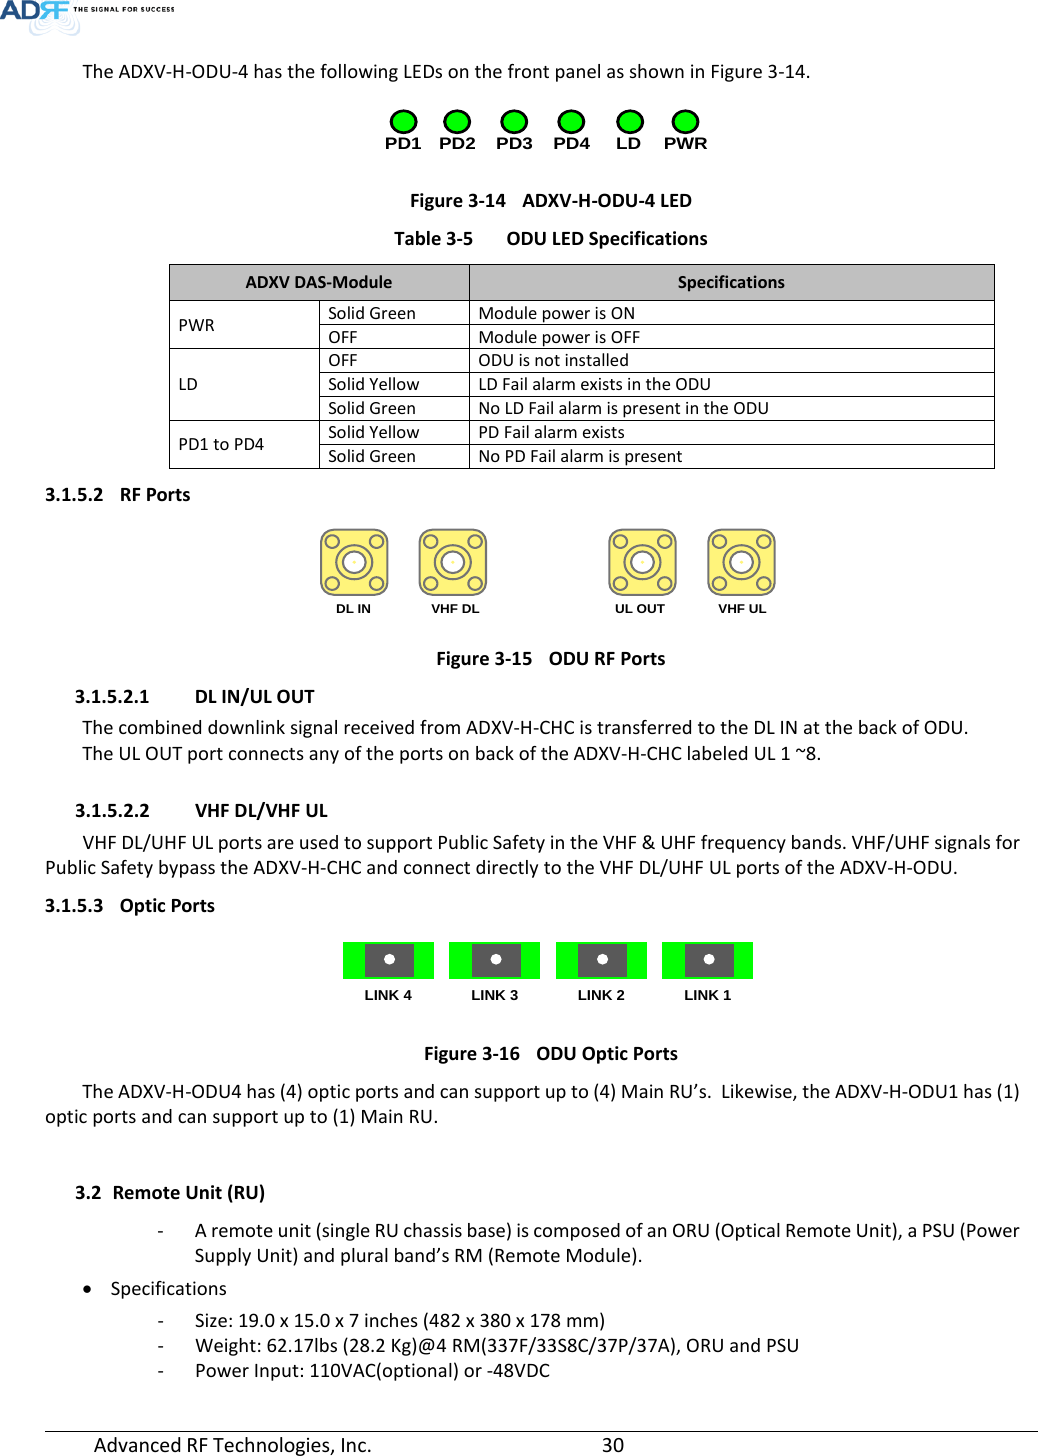 Page 30 of ADRF KOREA ADXV-R-25VUNA DAS (Distributed Antenna System) User Manual ADXV DAS